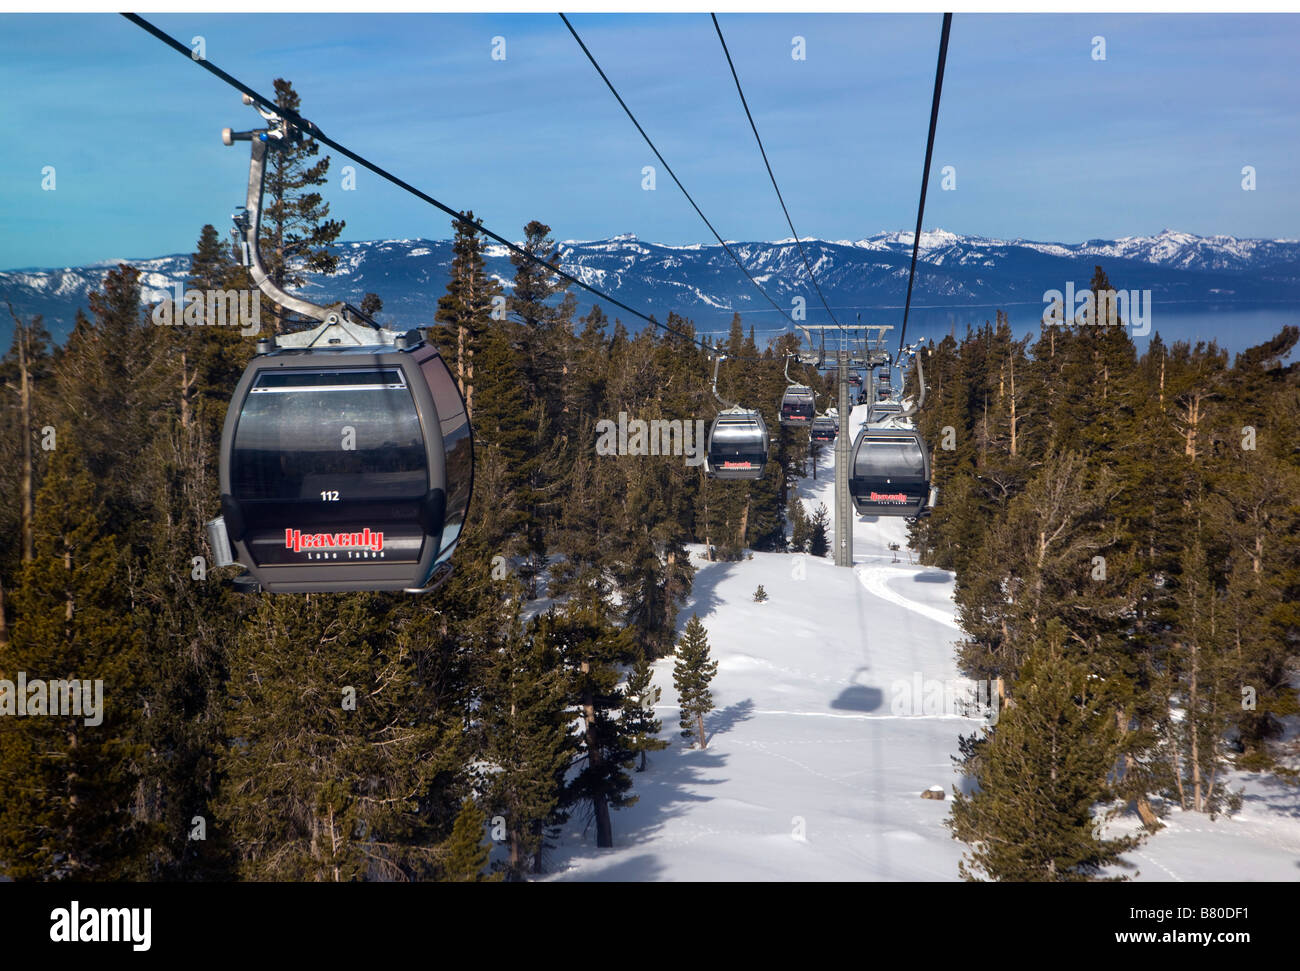 Die Gondel am himmlischen nimmt Skifahrer und Snowboards den Berg hinauf von South Lake Tahoe, Kalifornien Stockfoto